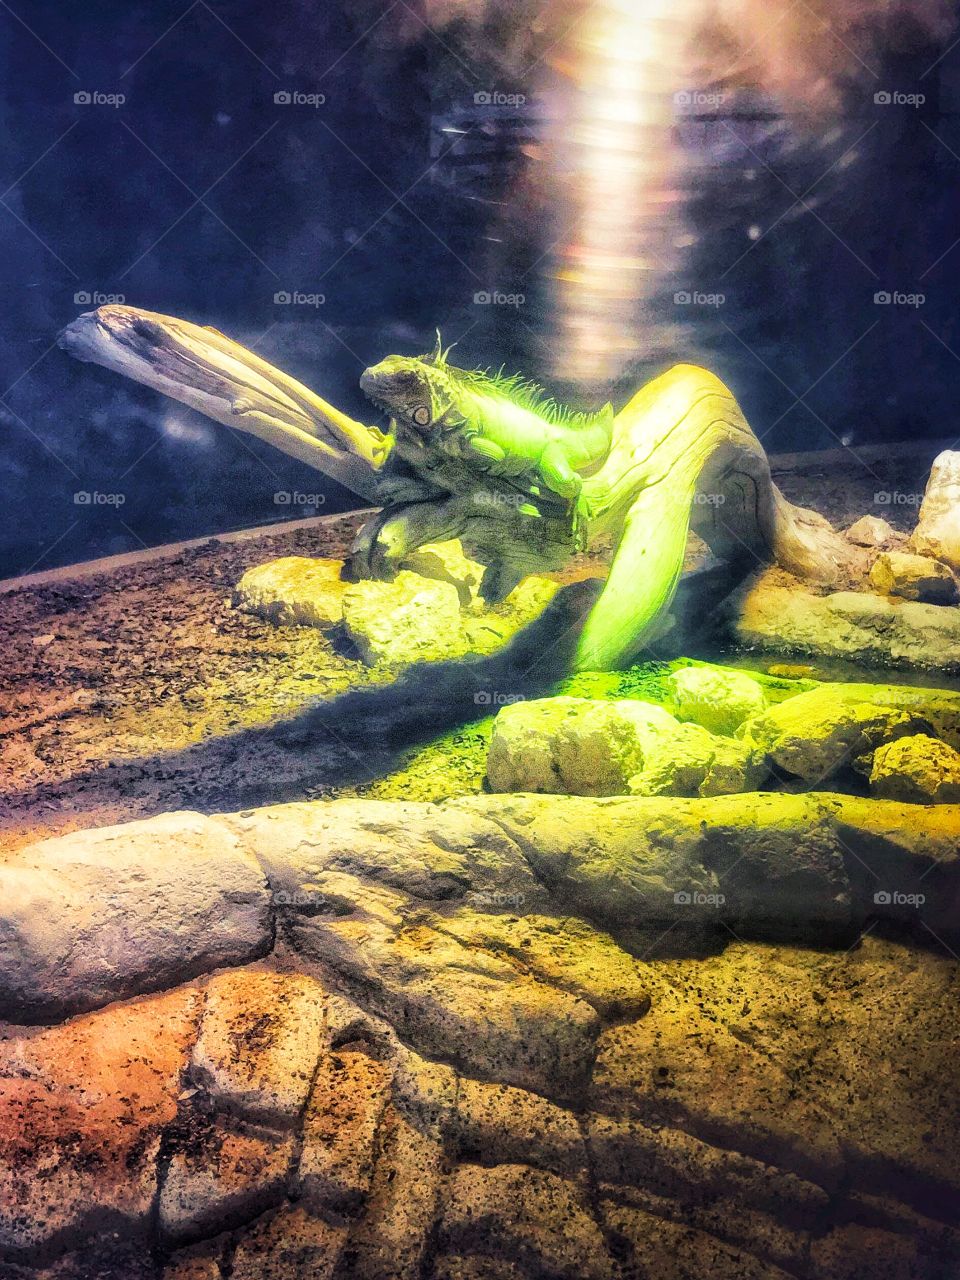 Green Iguana, at Al Ain Zoo 